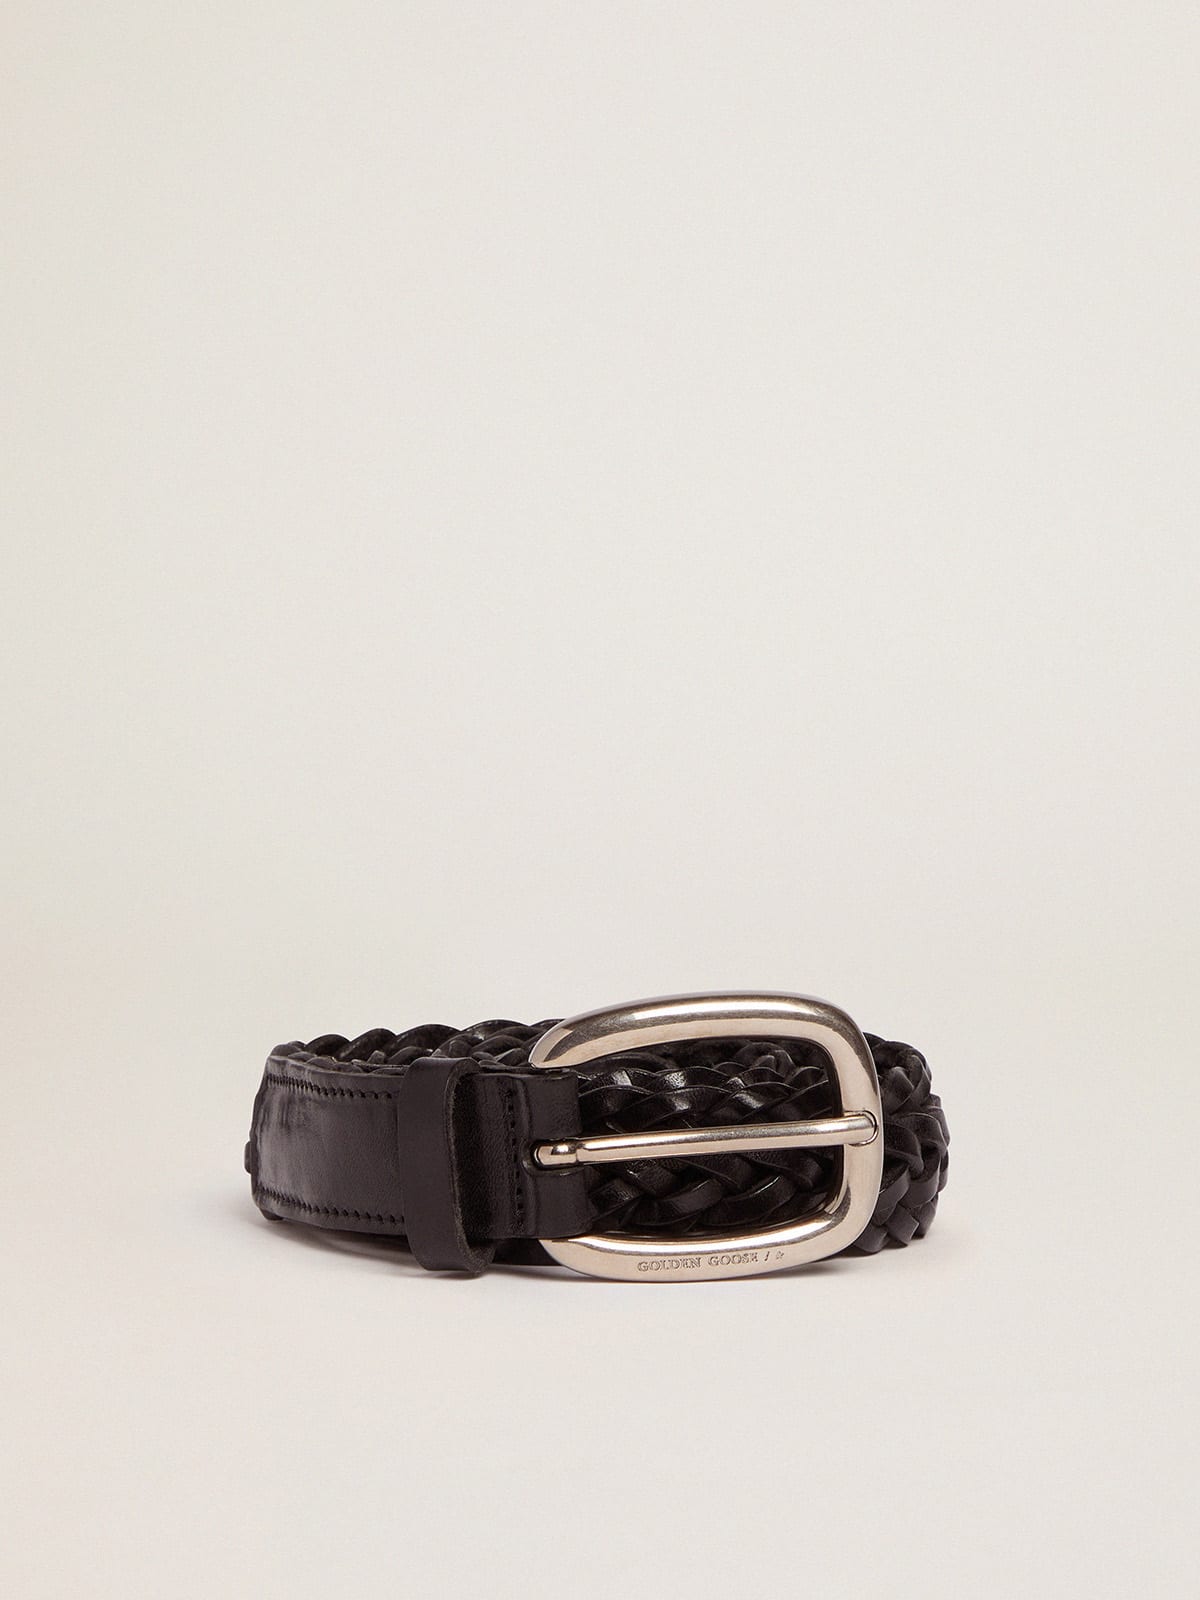 Women's belt in black braided leather